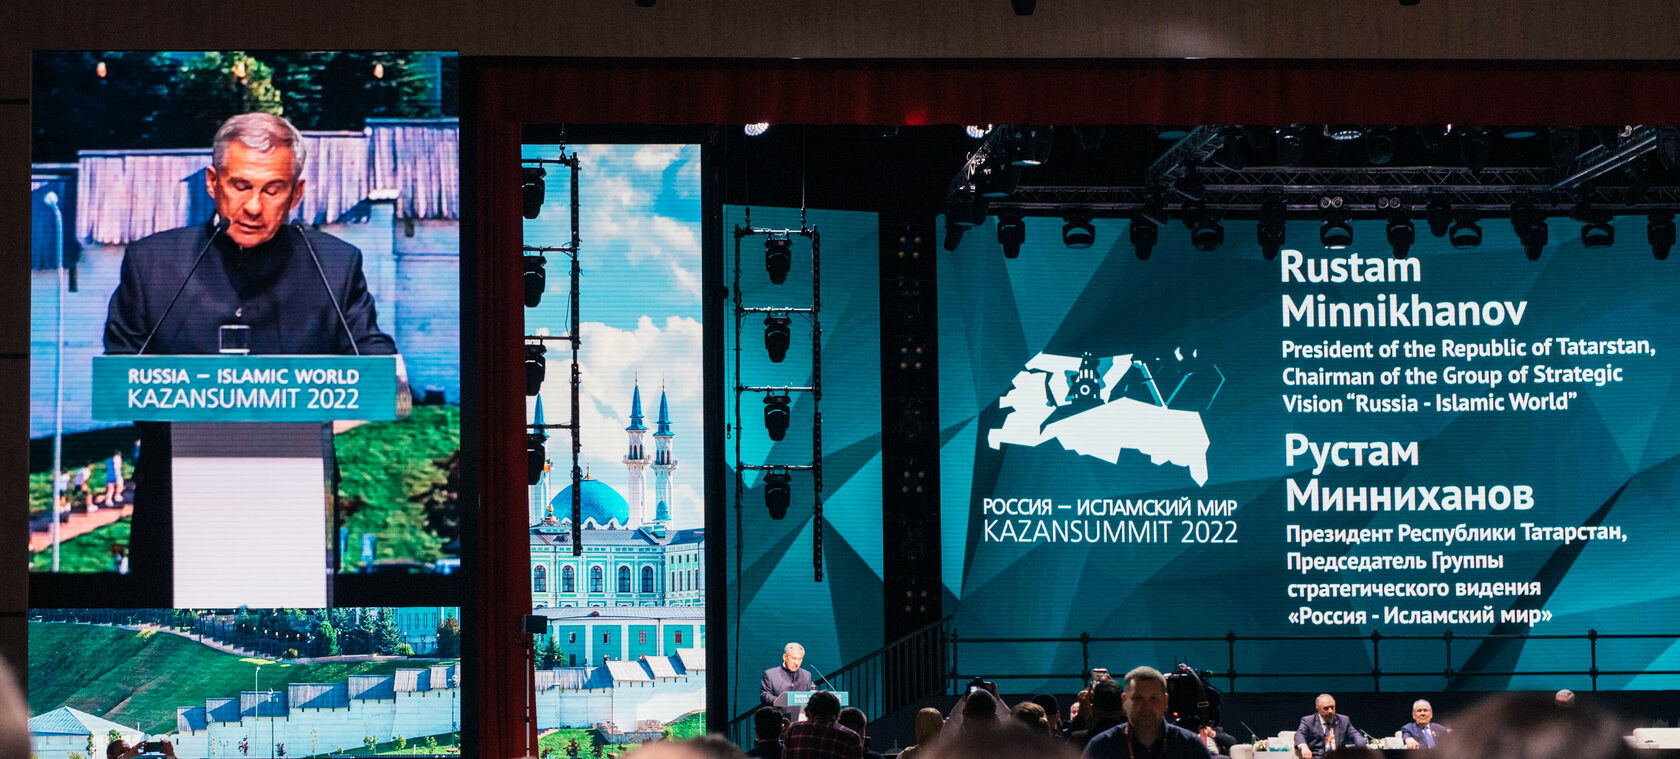 Петербургский правовой саммит 2022. Kazan Youth Summit 2022. Казань саммит 2024 даты